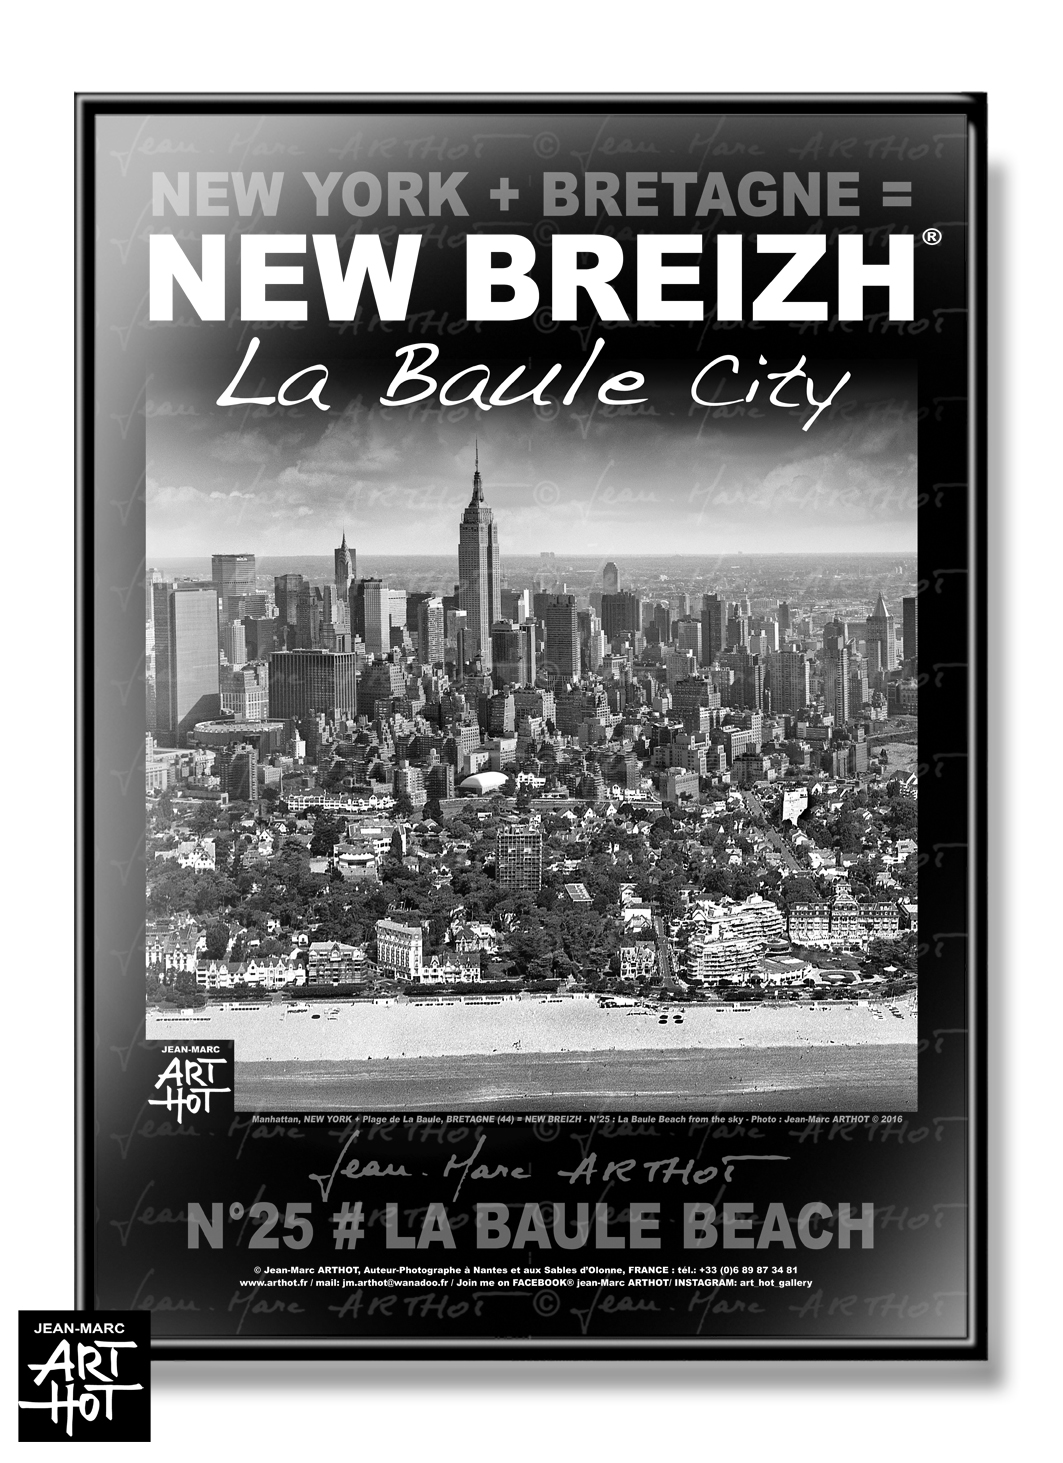 arthot-photo-art-b&w-new-york-bretagne-newbreizh-025-loire-atlantique-44-la-baule-plage-building-AFFICHE